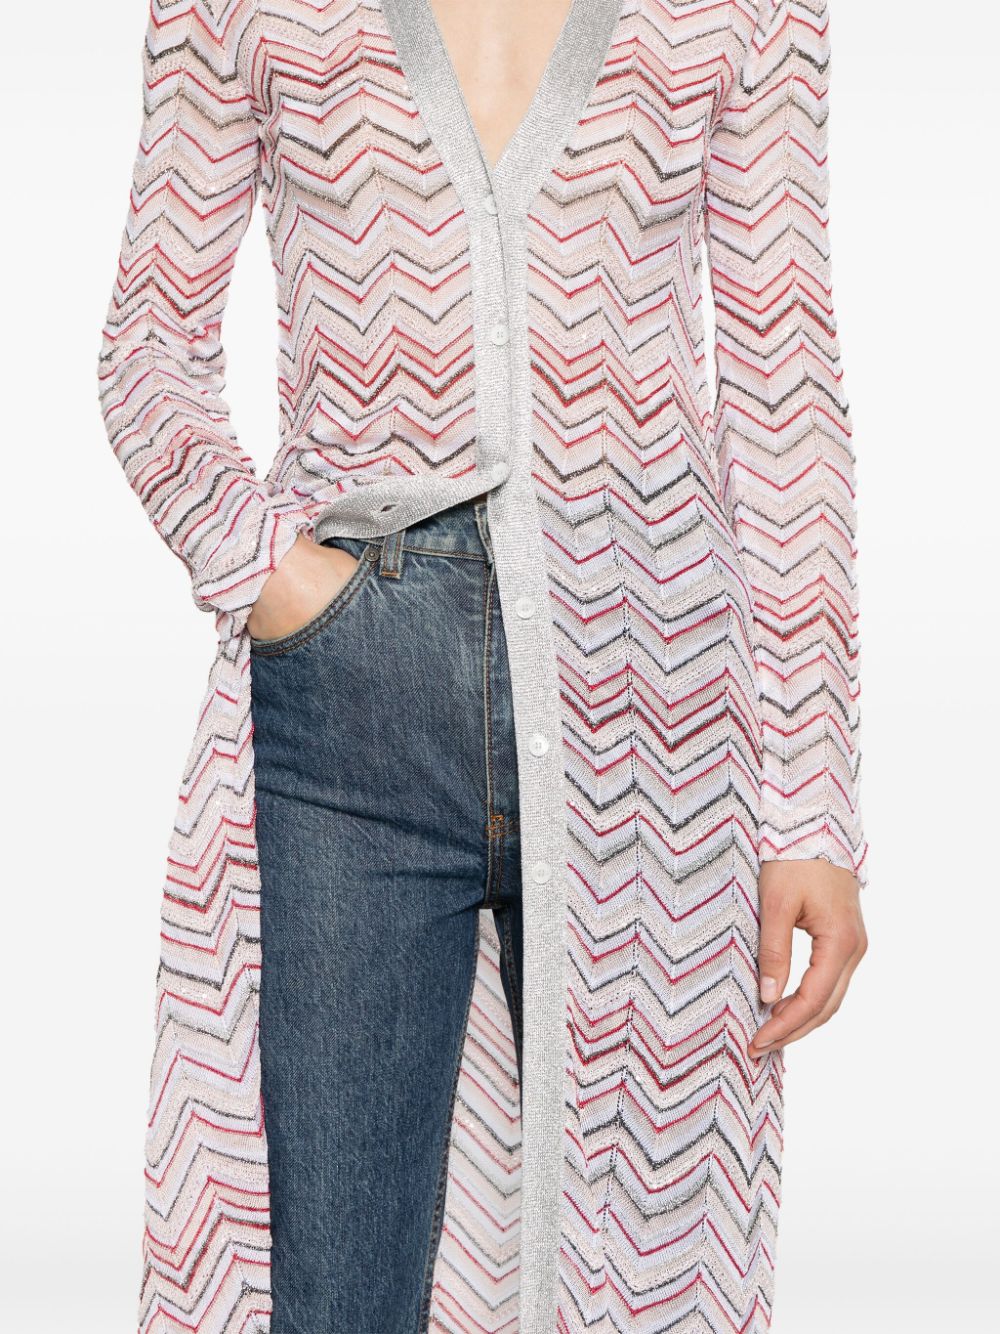 女性用ライトサーモンピンク色のジグザグ模様ロングカーディガン